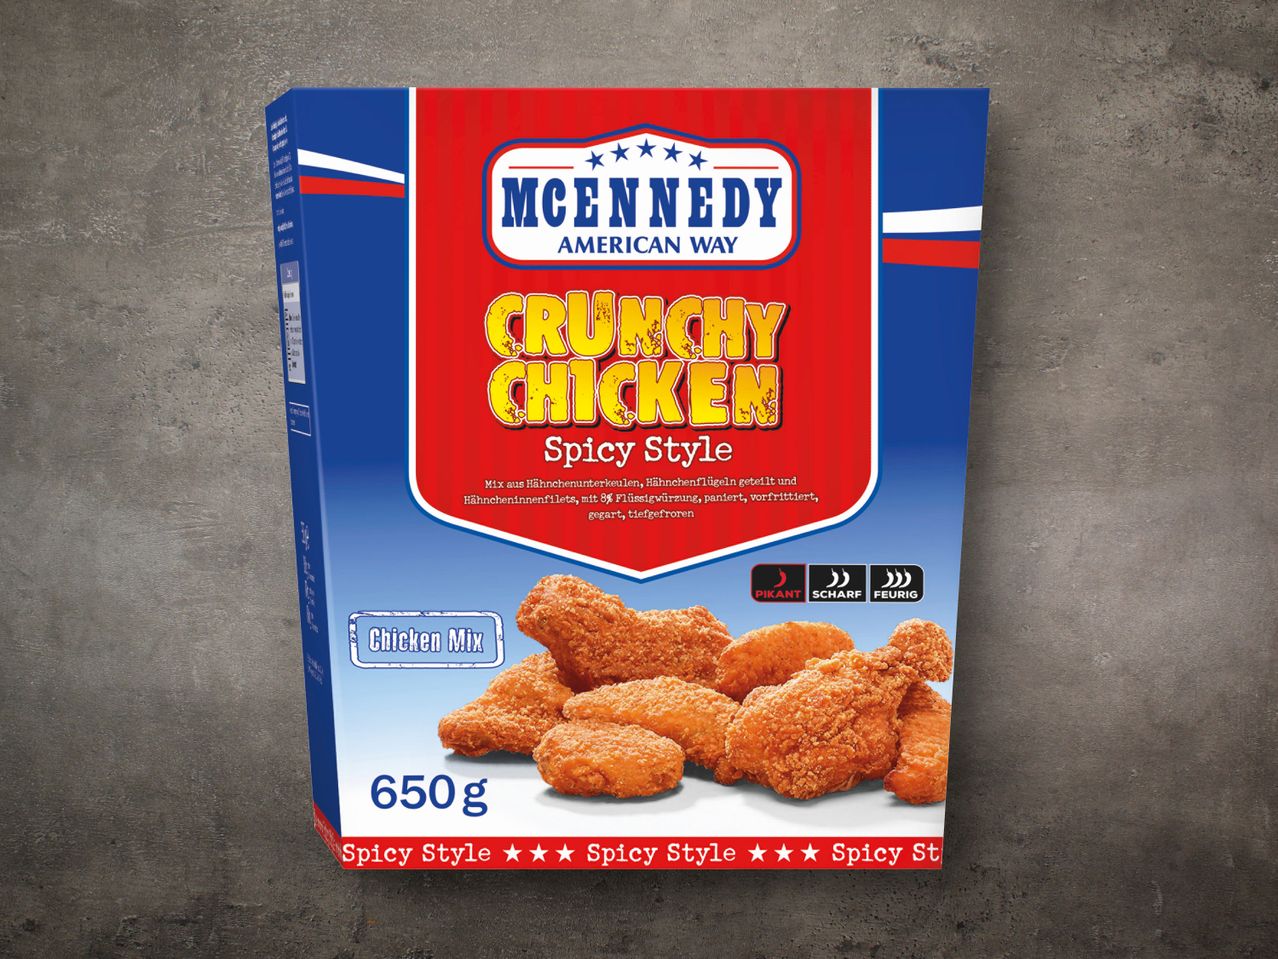 McEnnedy Crunchy Chicken Bucket